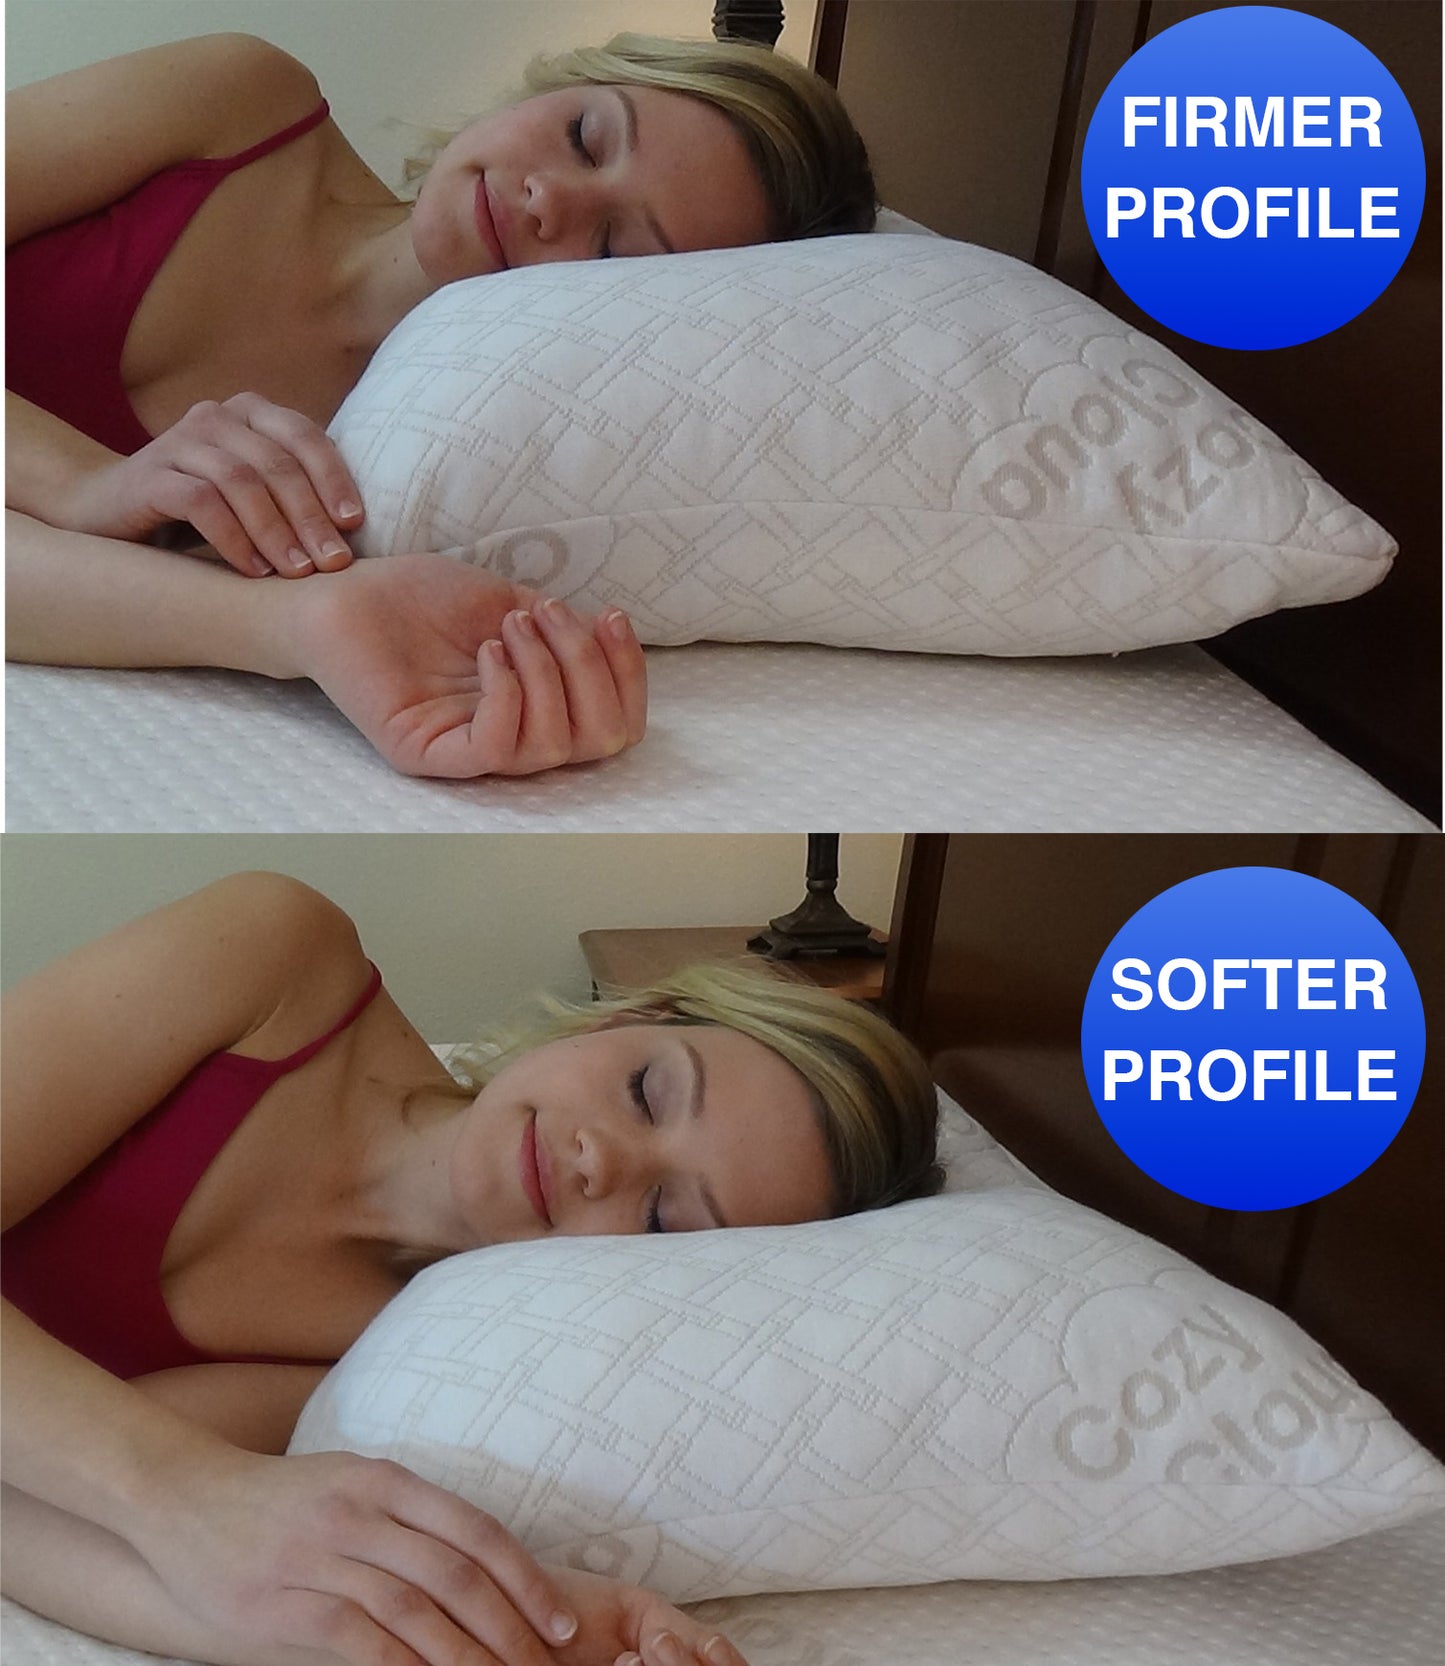 CozyCloud™ Deluxe 2-in-1 Adjustable Memory Foam Pillow